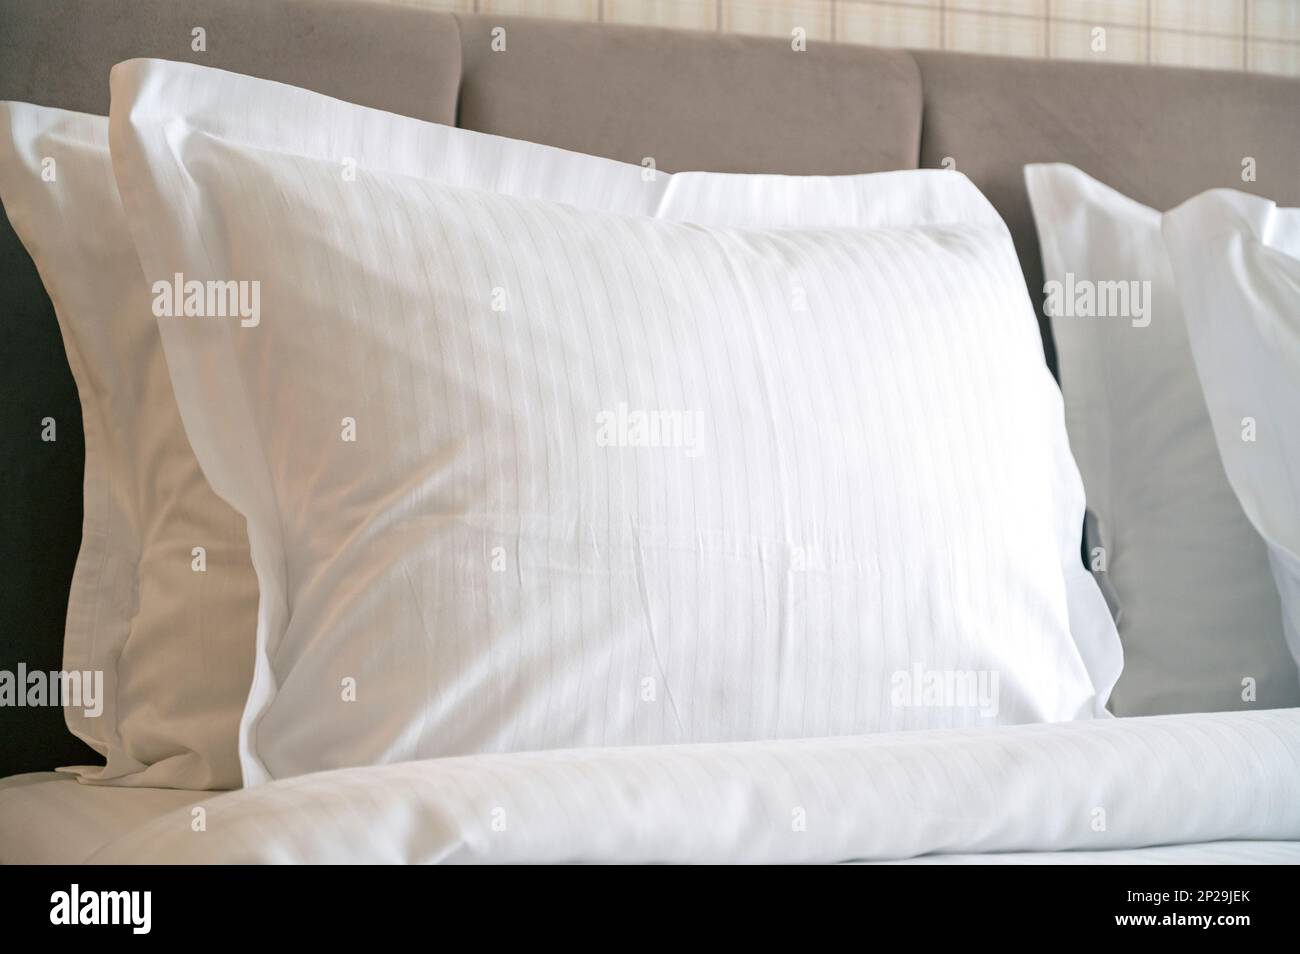 Primer plano de almohadas blancas en una cama en el hotel, almohada blanca limpia en una habitación cómoda Foto de stock